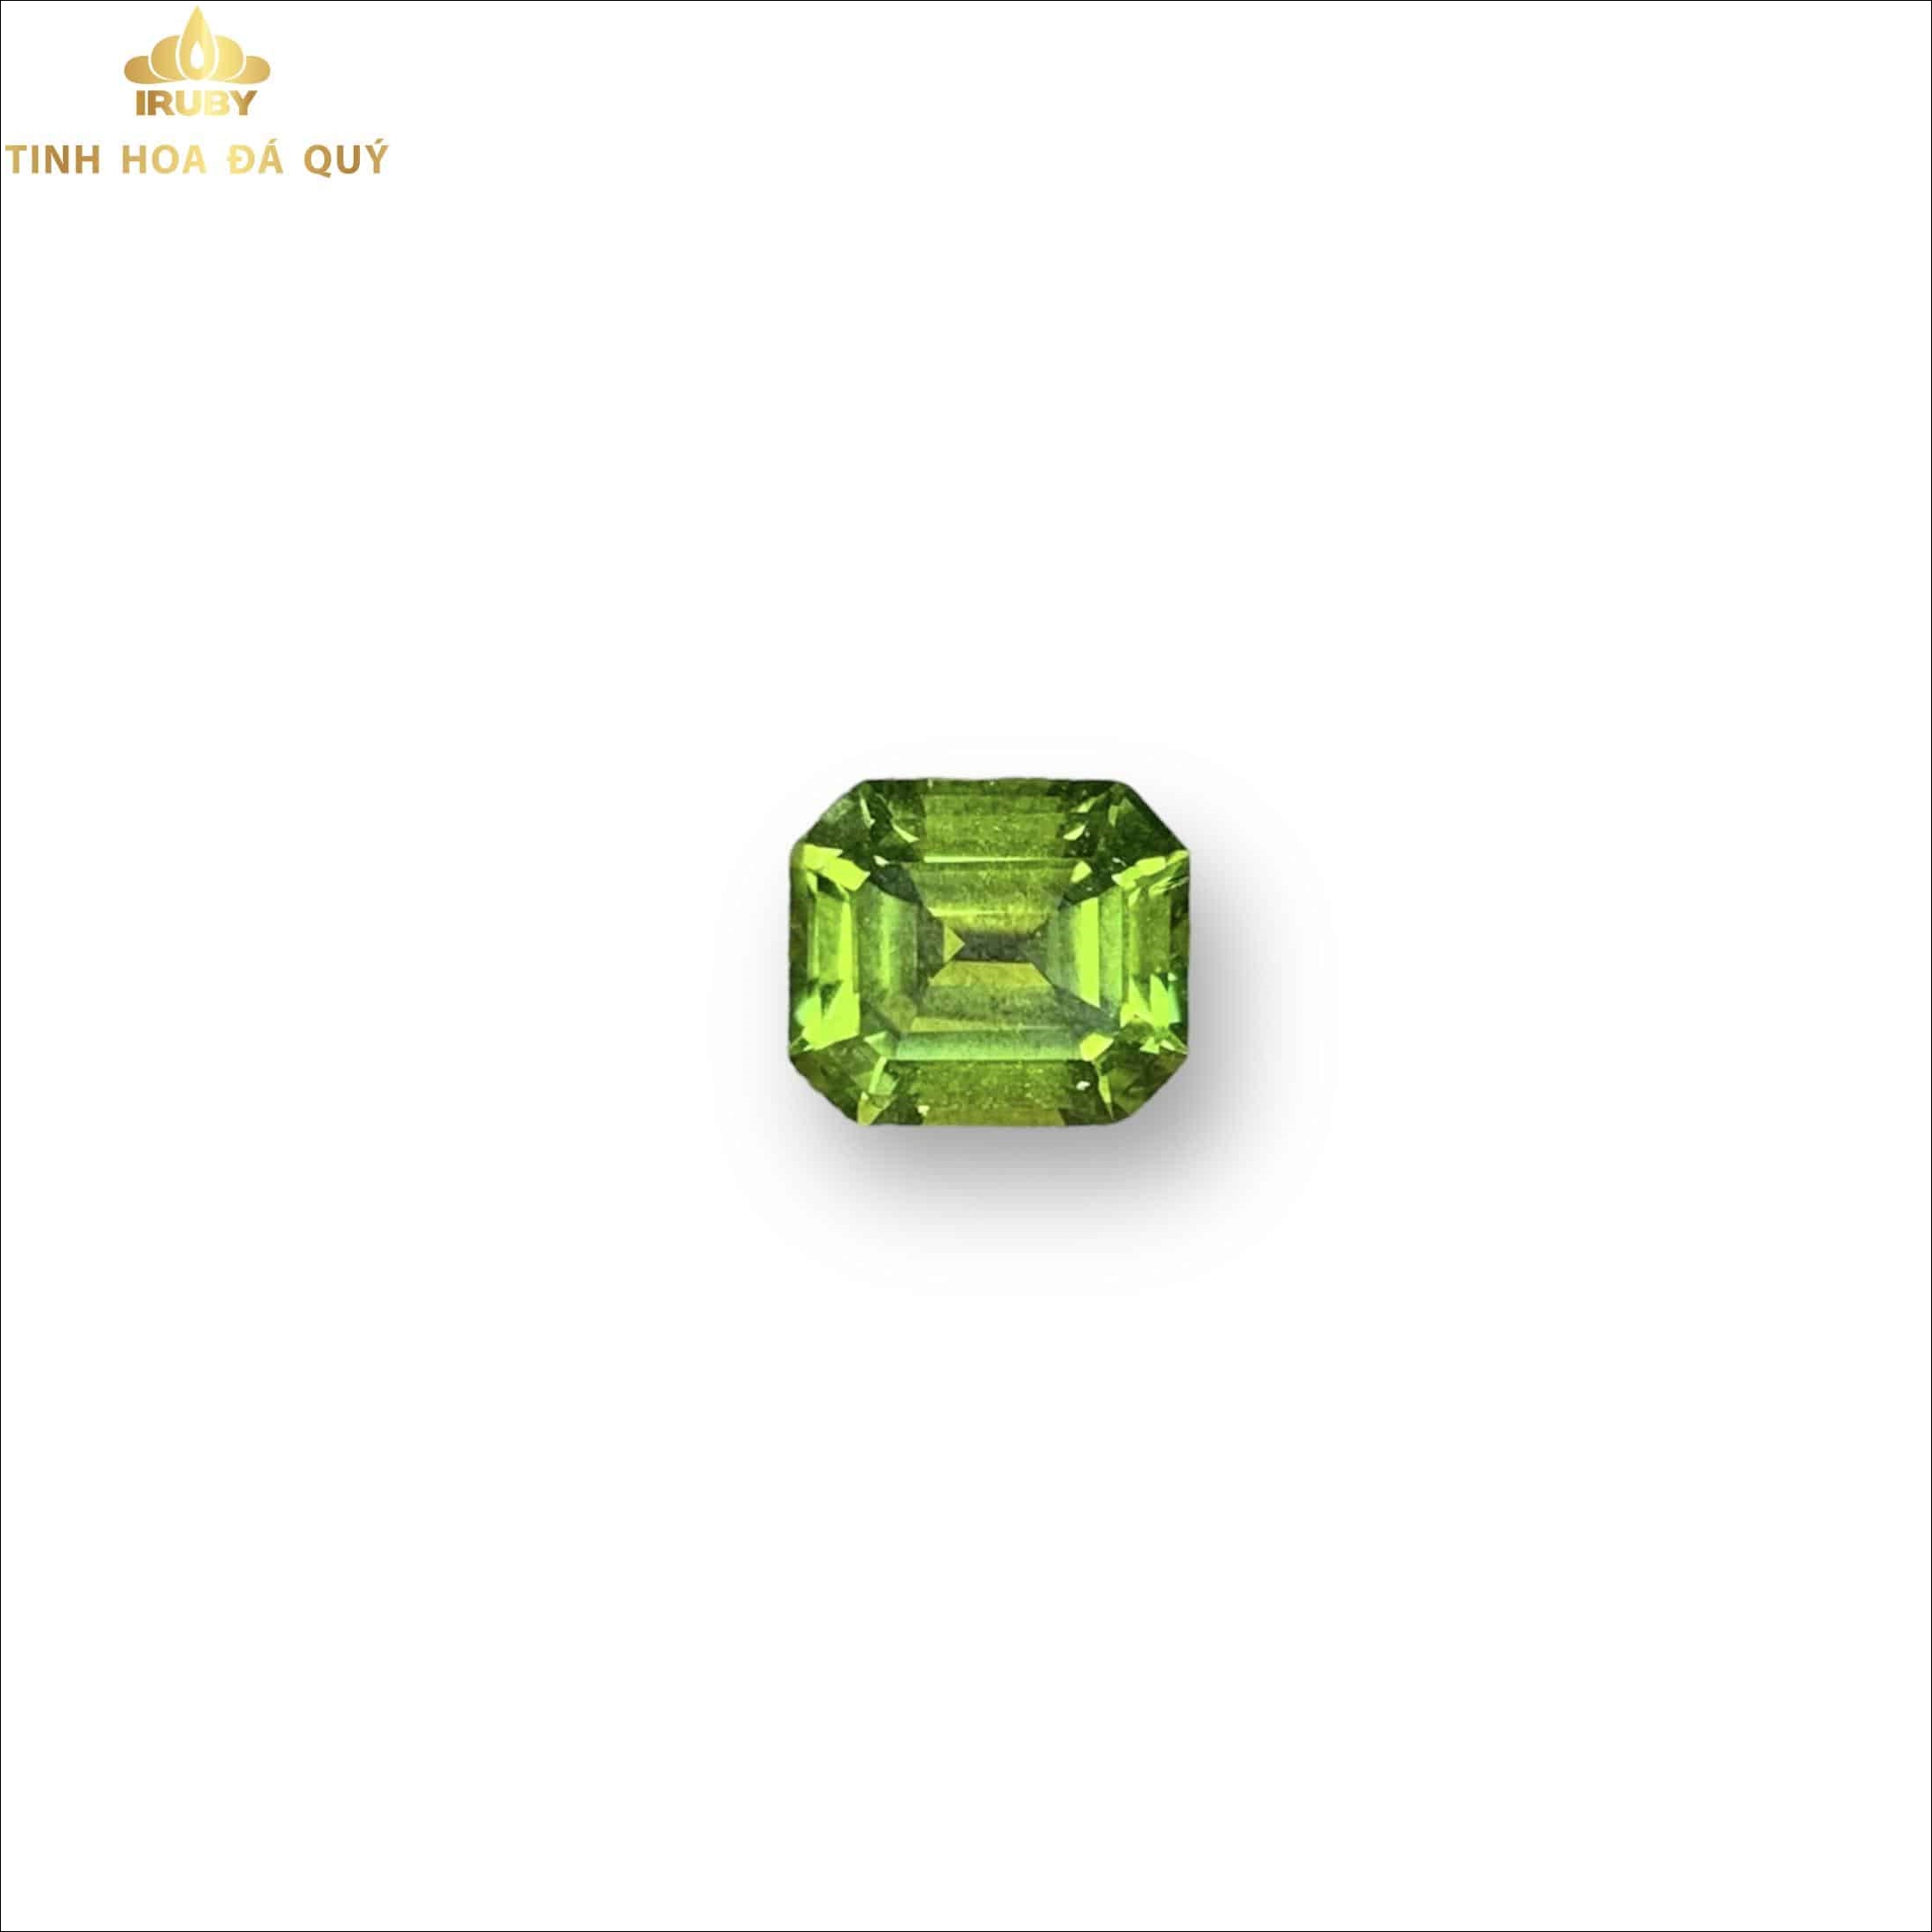 Viên Tourmaline Emerald xanh lá mạ 2,05ct - IRTM 233205